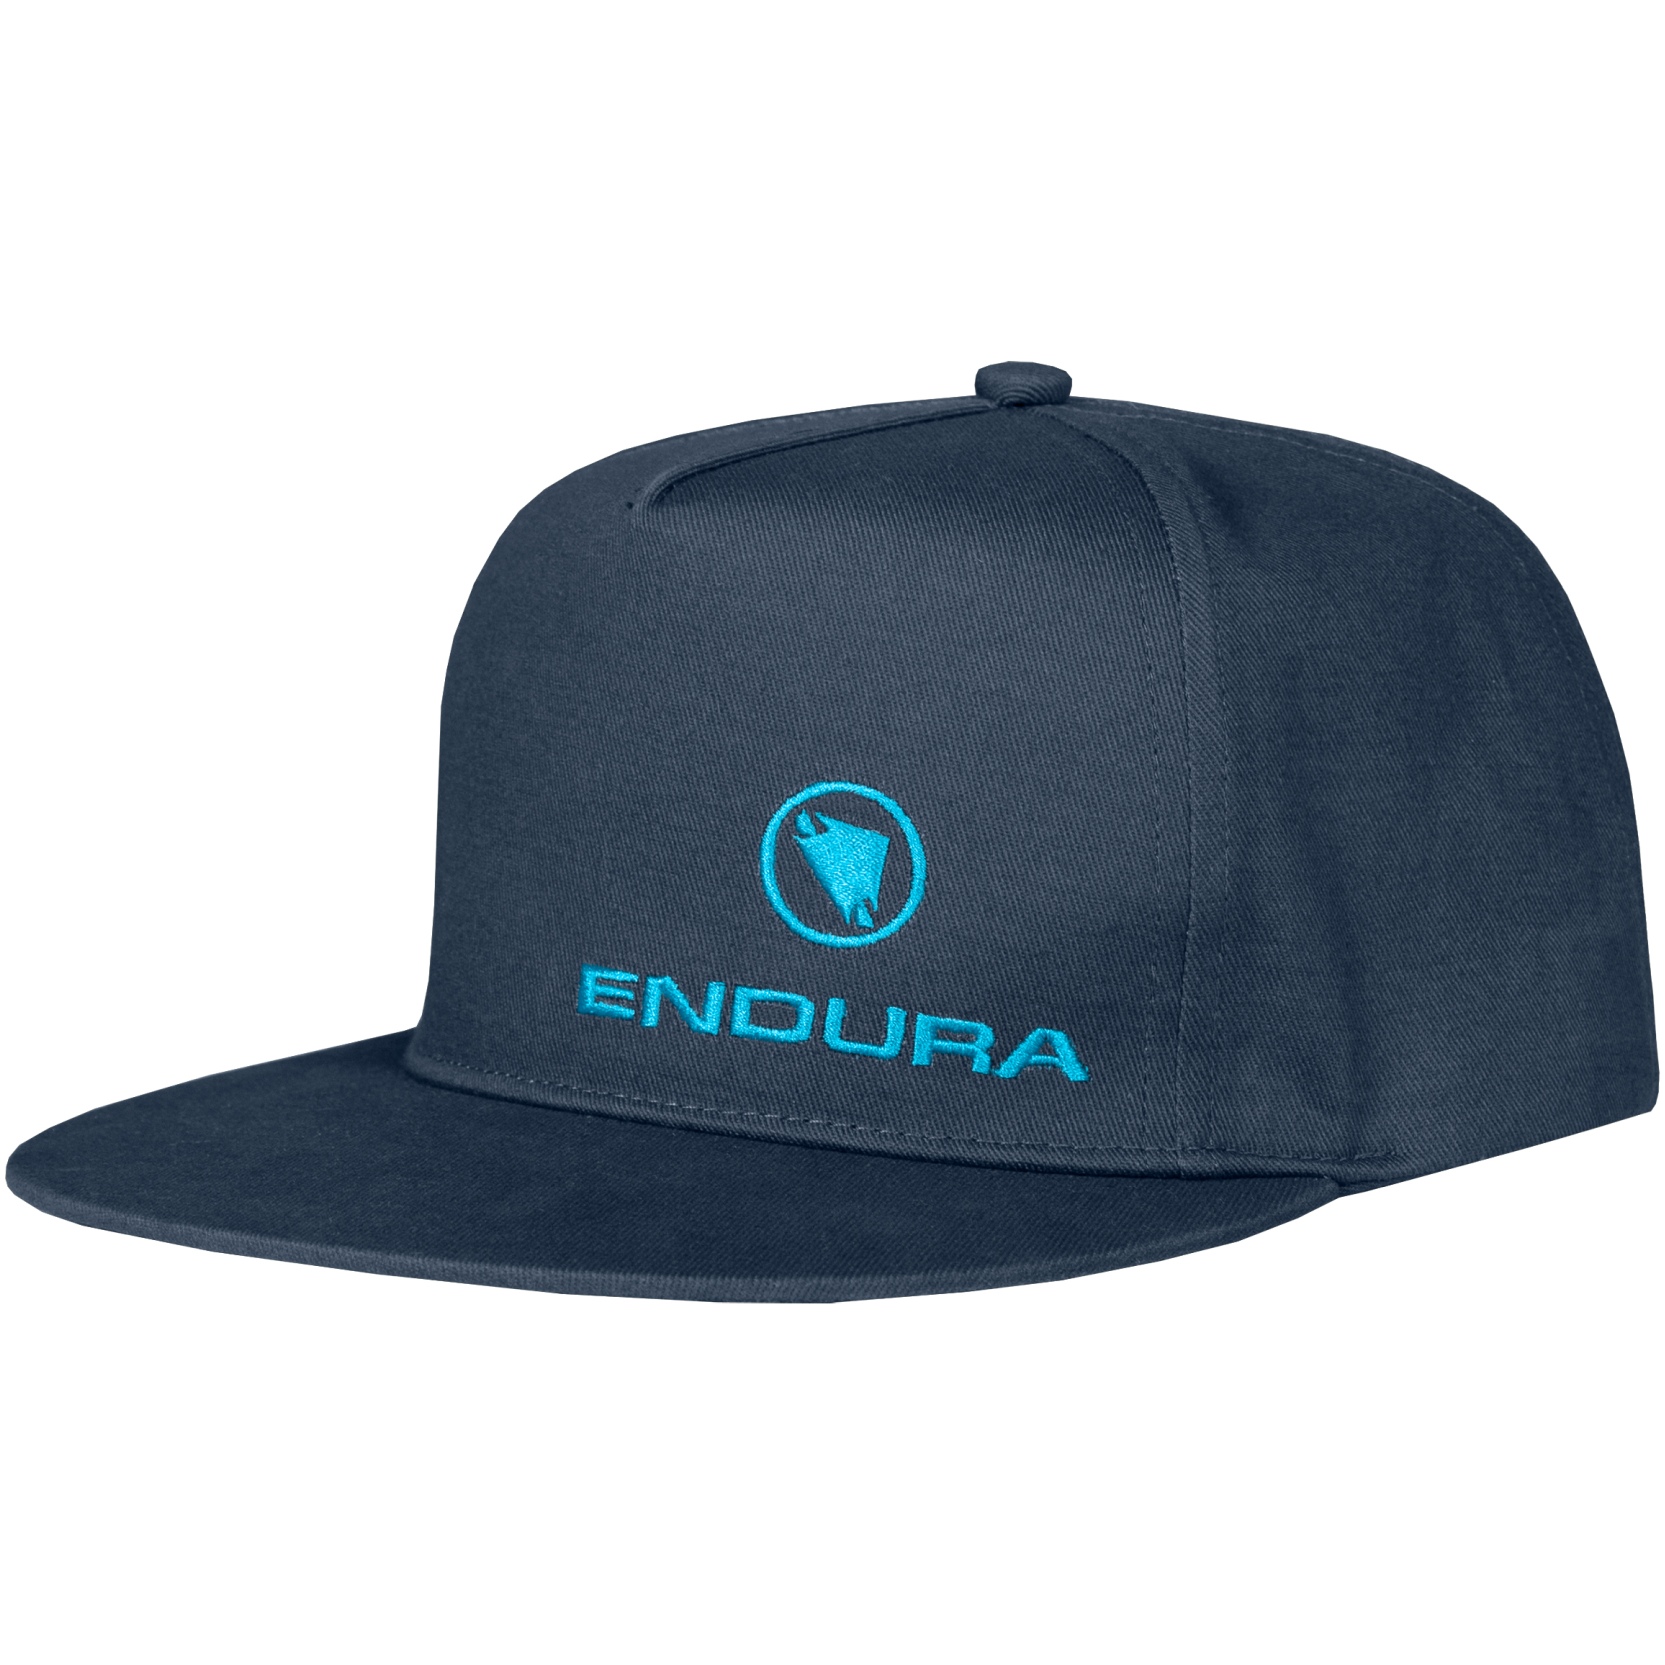 Produktbild von Endura One Clan Cap - ink blue